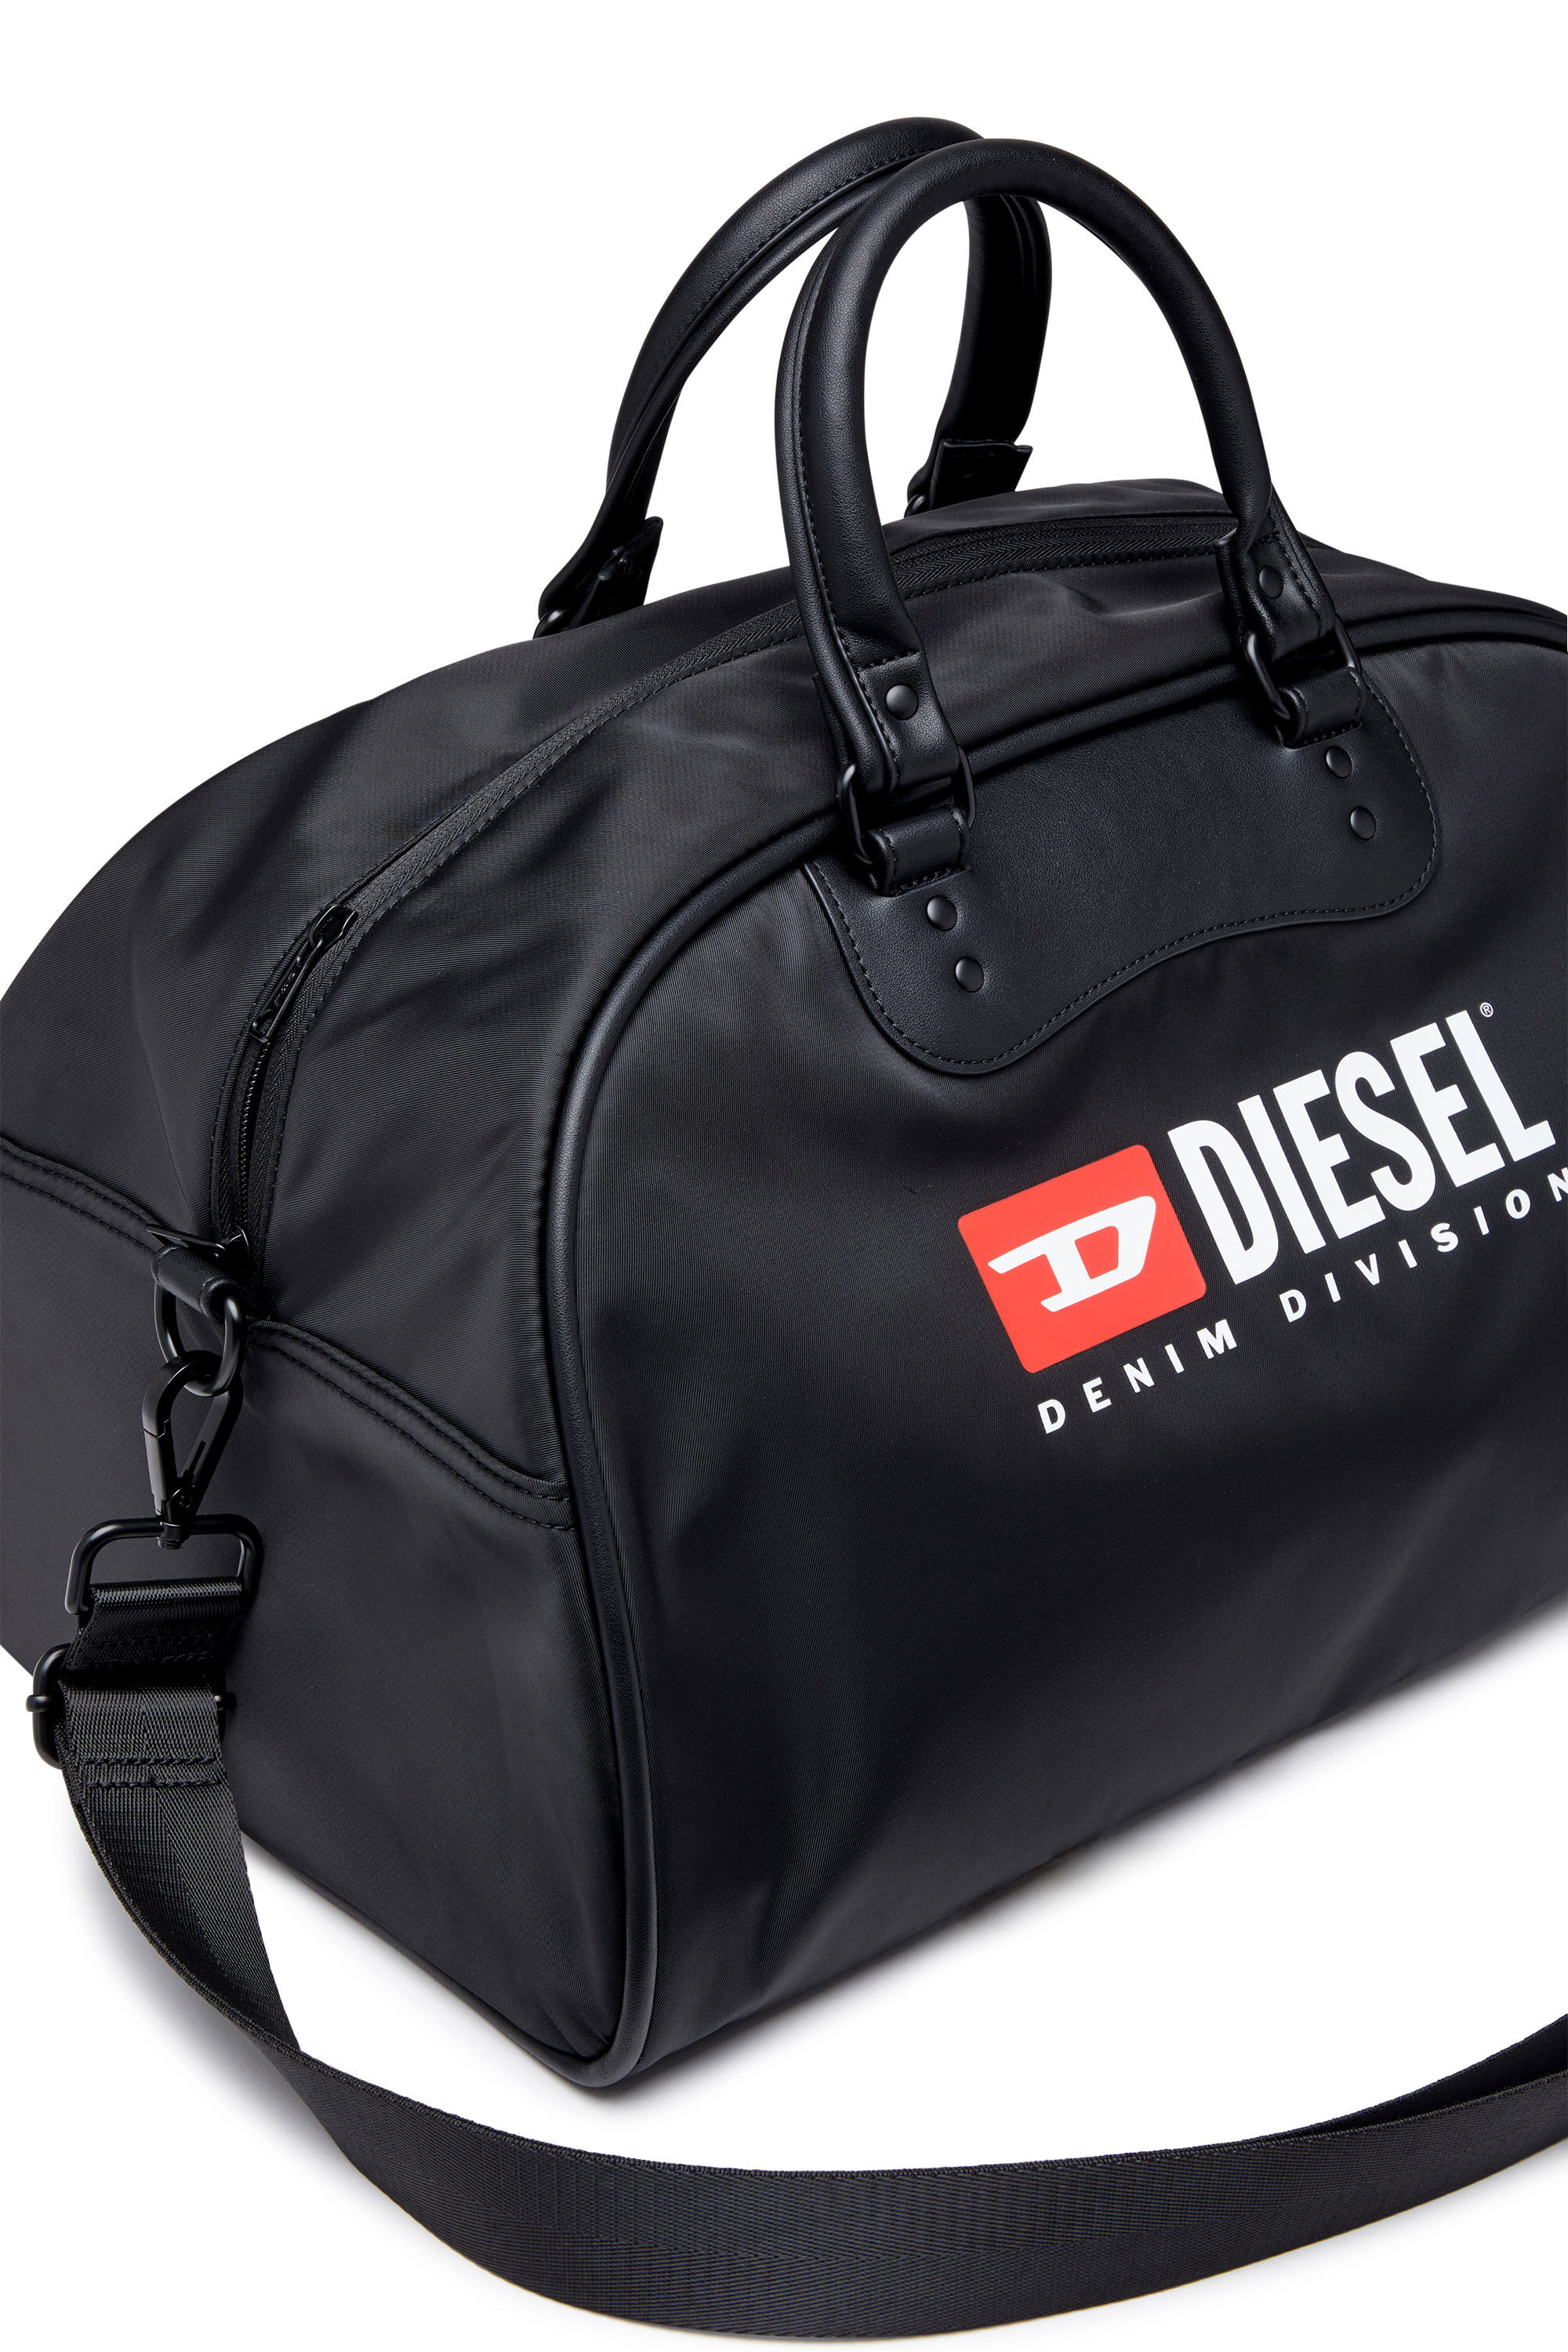 Diesel - RINKE DUFFLE, Black - Image 4